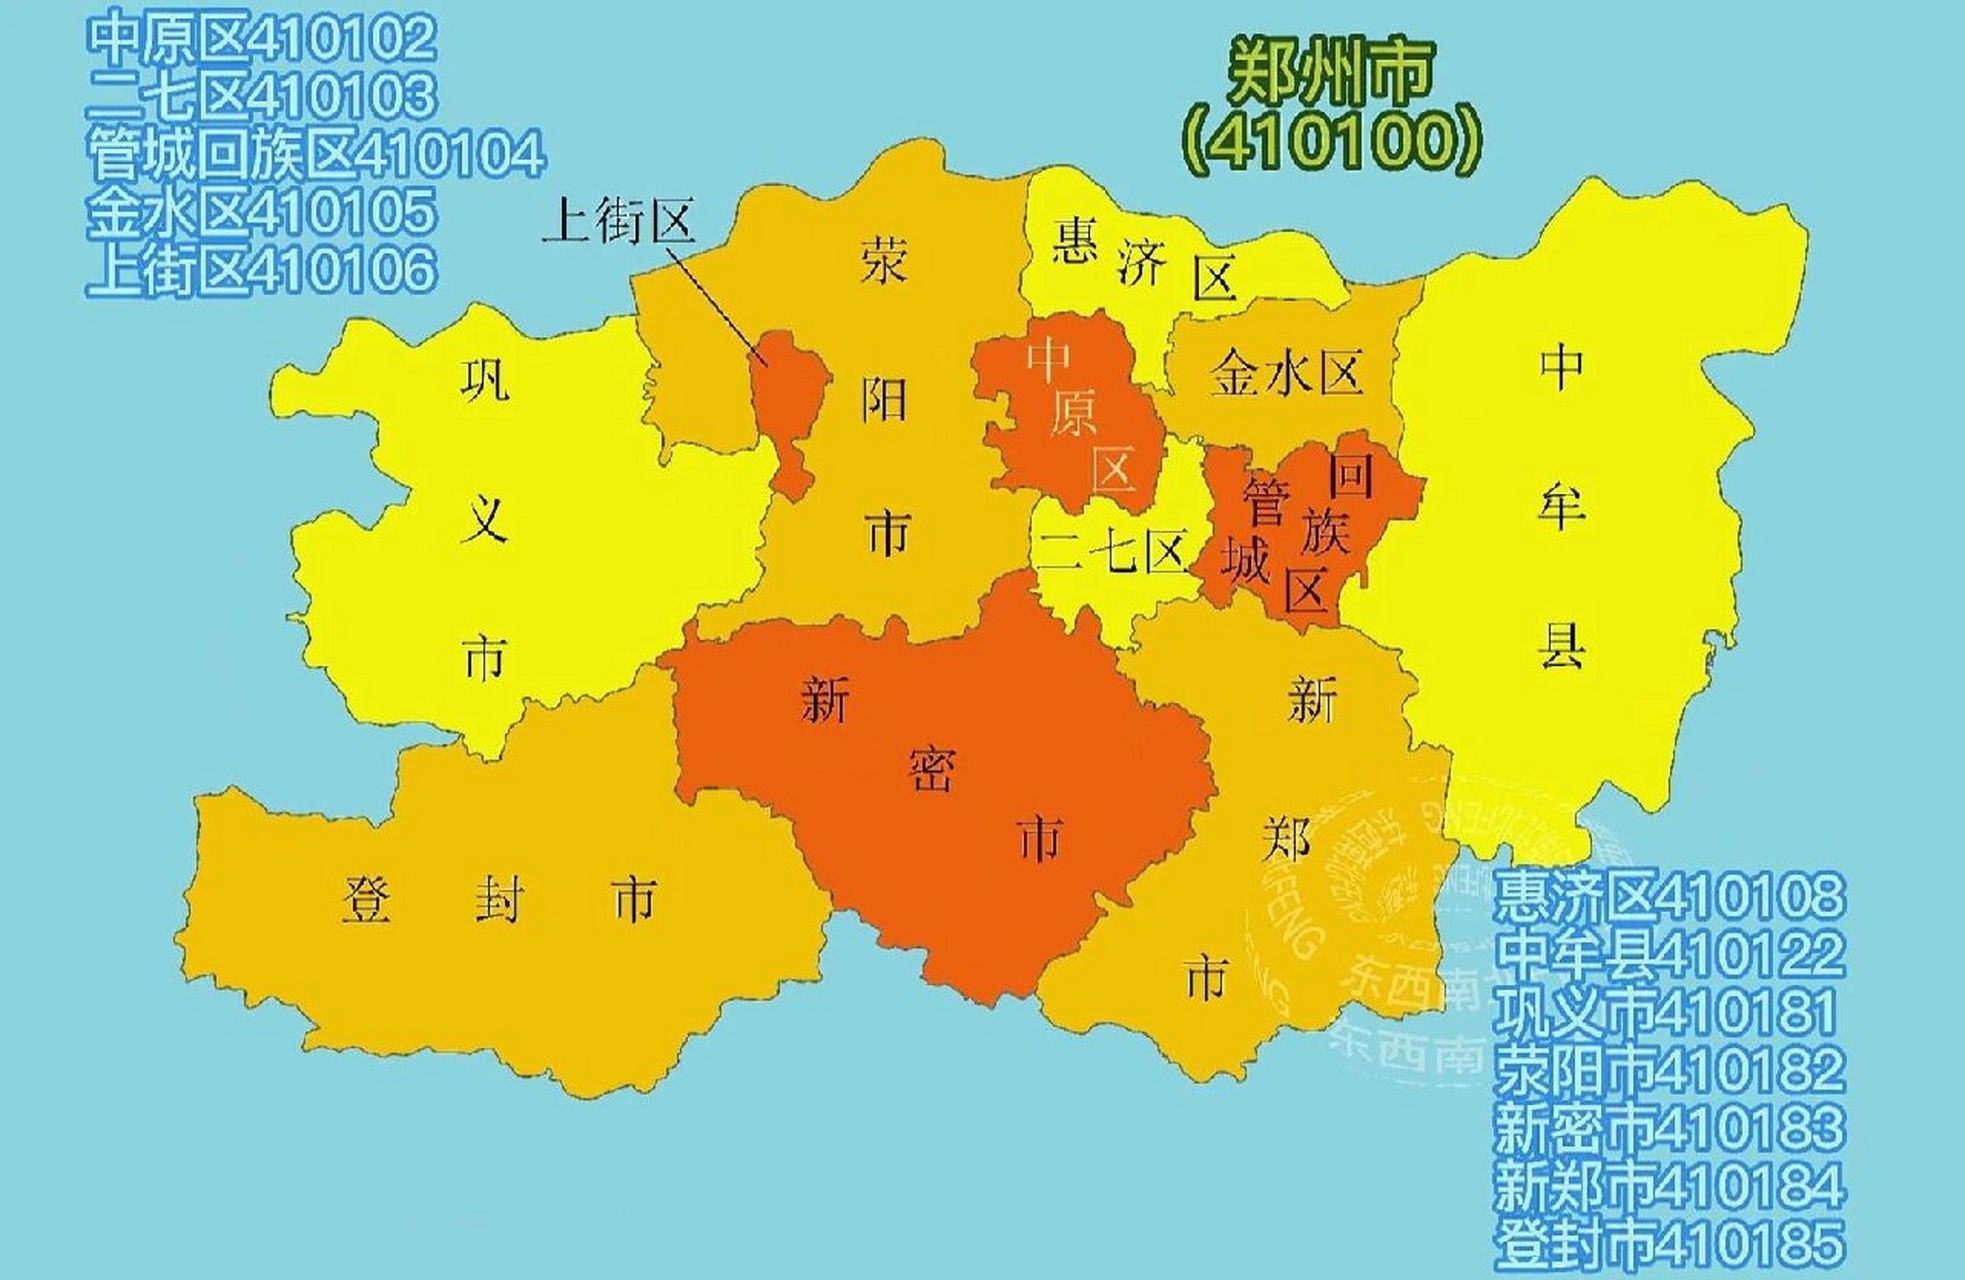 河南省行政区划地图 郑州,河南省省会,国家中心城市,地形总趋势是西南